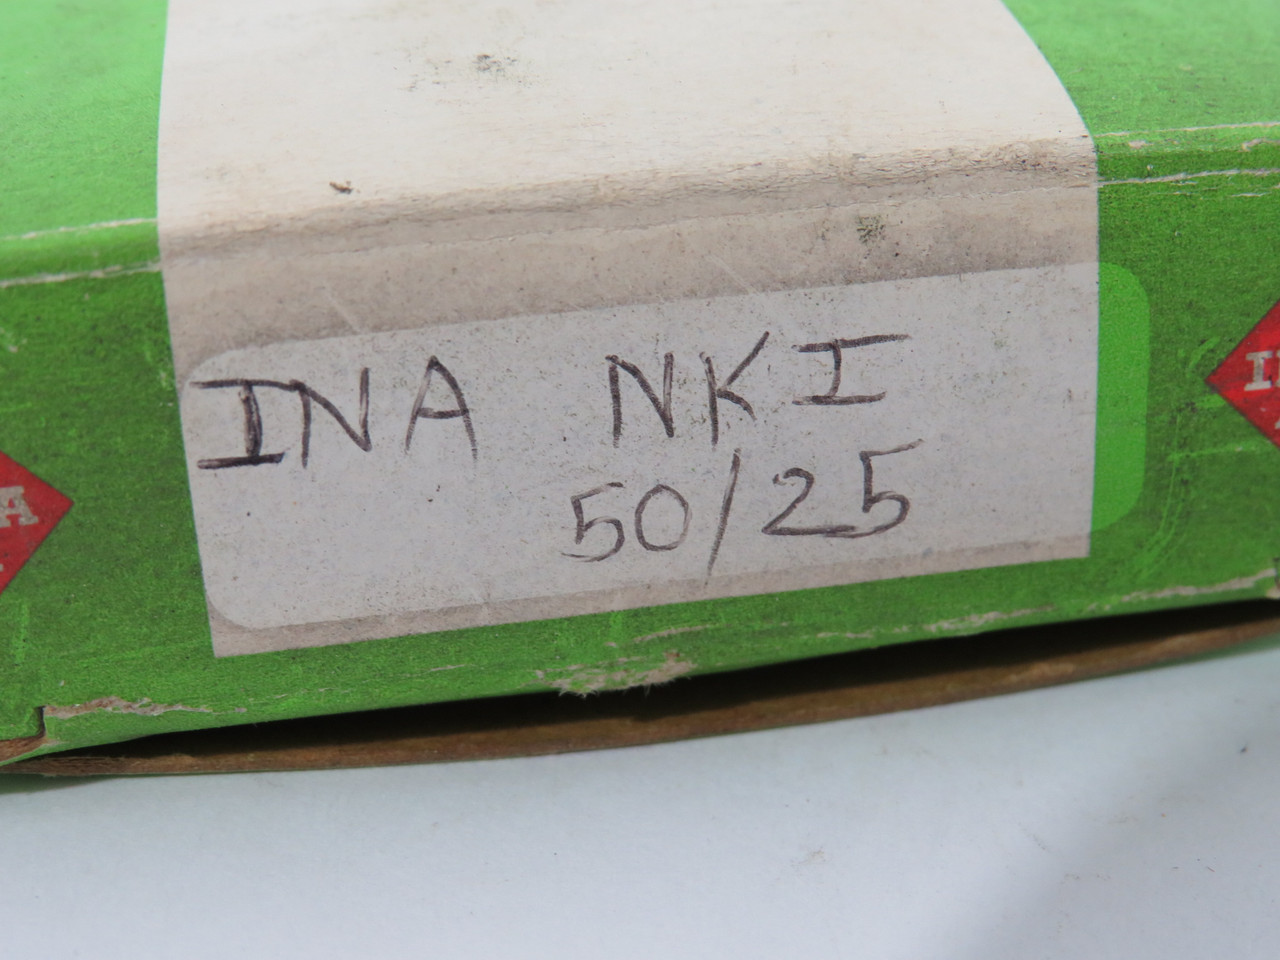 INA NKI50/25 Needle Roller Bearing 2.677"OD 1.969"ID 0.984"W NEW